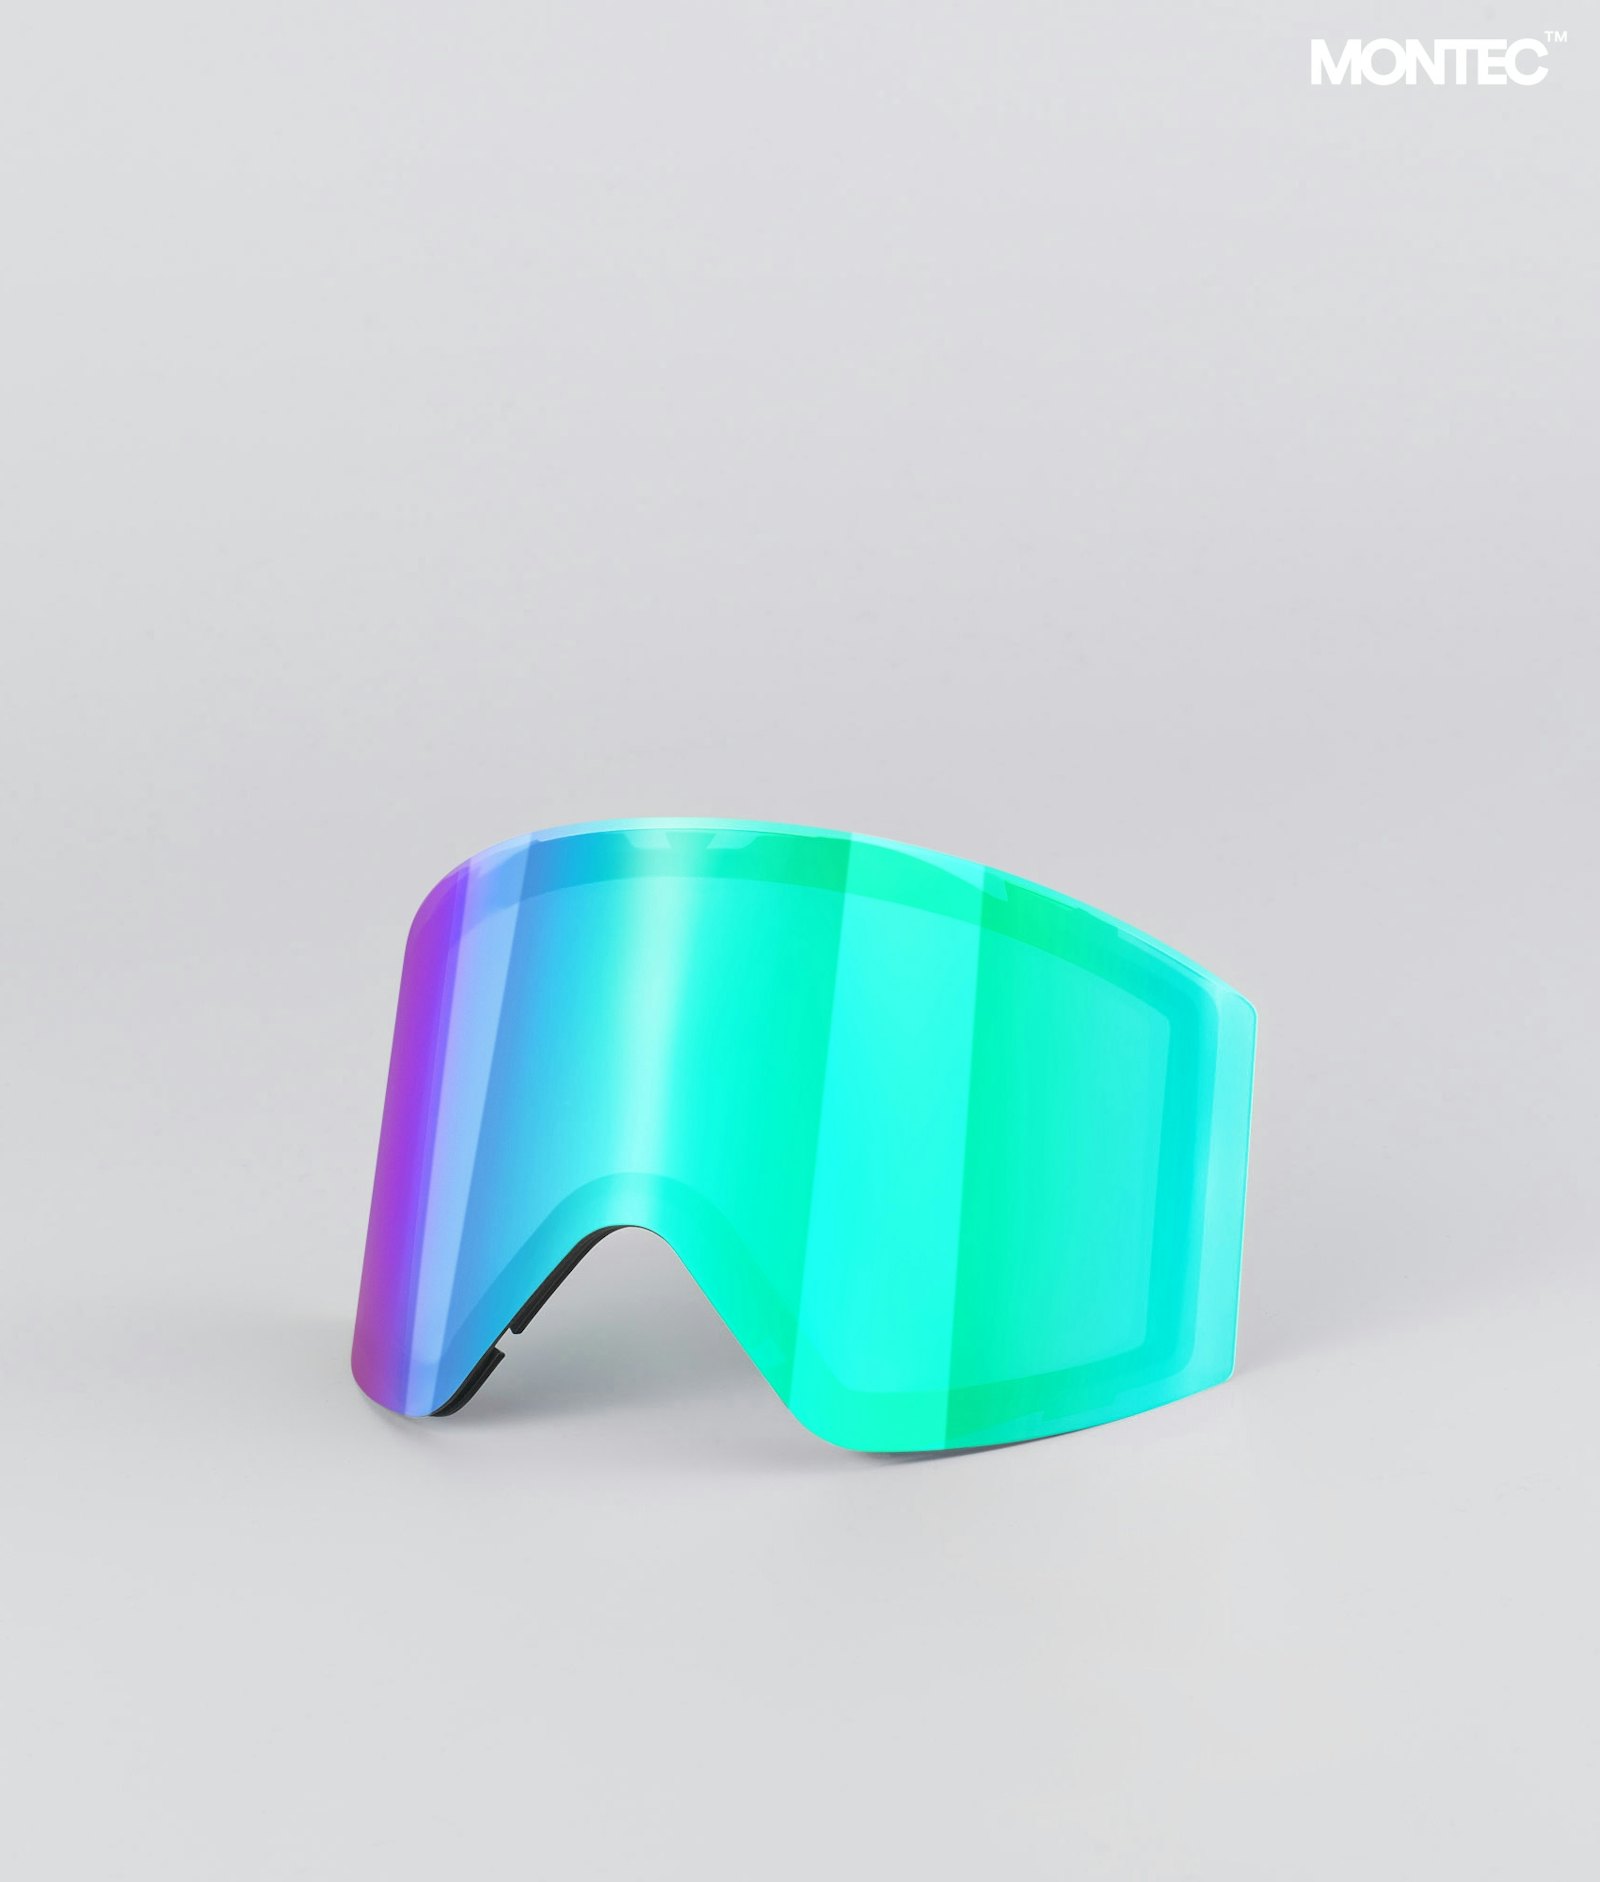 Montec Scope 2020 Goggle Lens Large Ecran de remplacement pour masque de ski Tourmaline Green